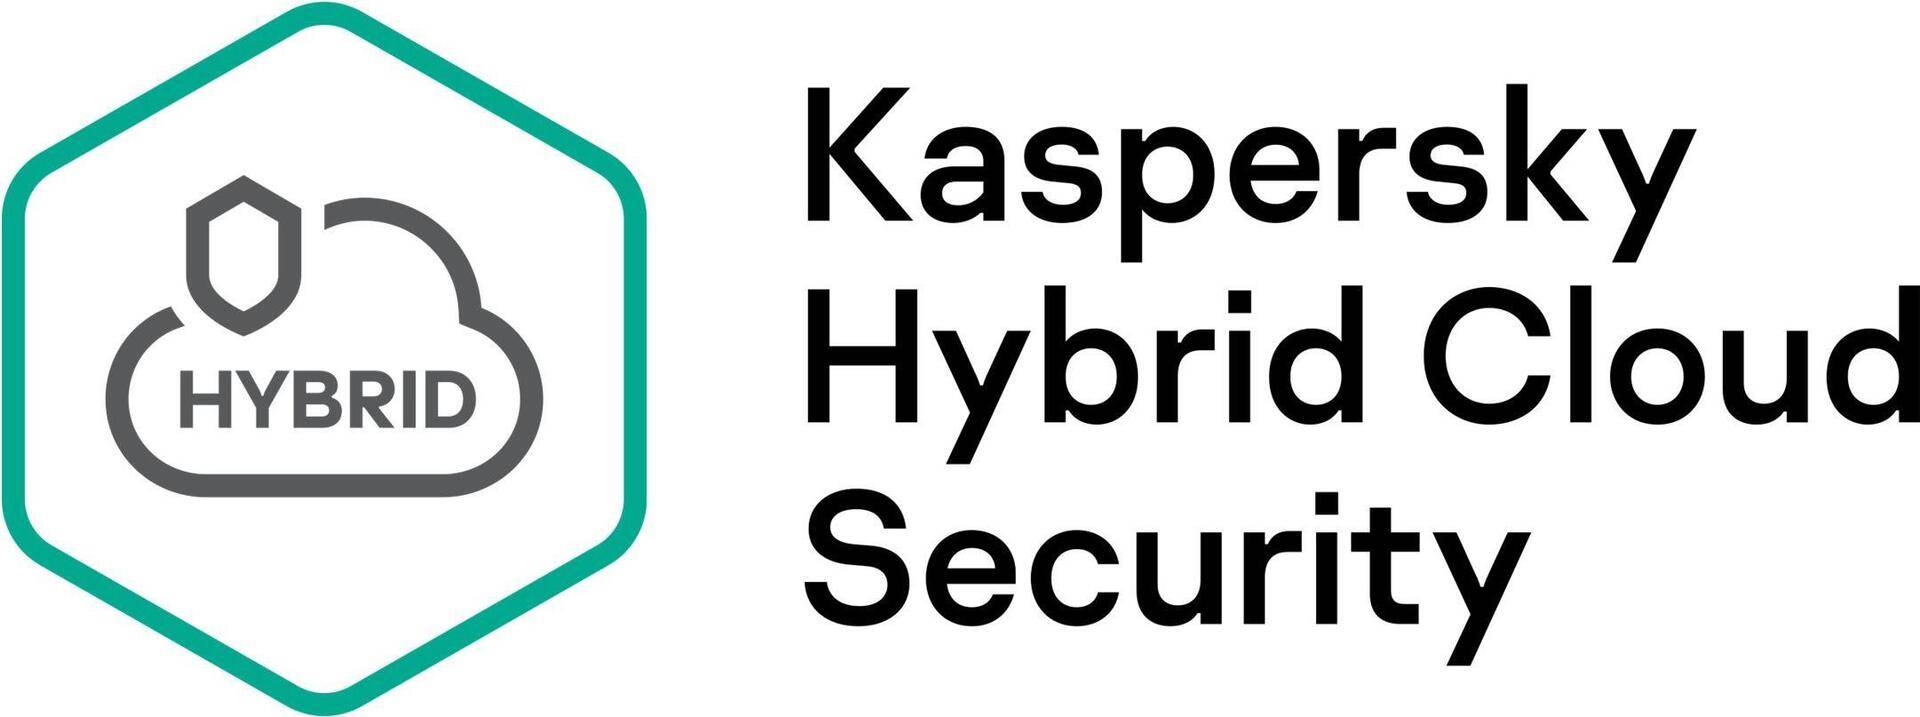 Kaspersky Hybrid Cloud Security Enterprise CPU European Edi. 5-9 CPU 1-Year Renewal License (KL4553XAEFR) von Kaspersky Lab